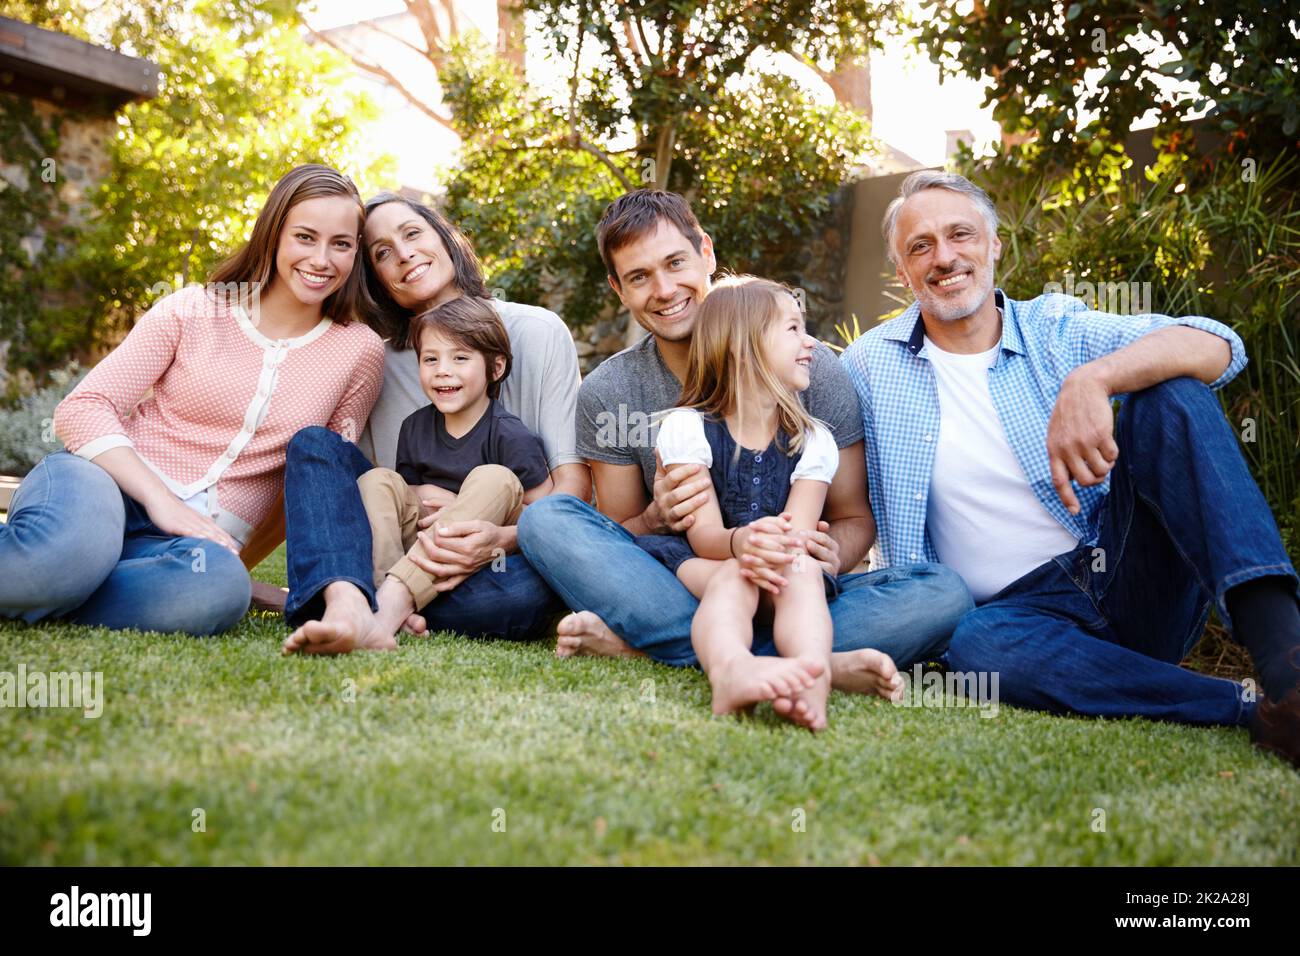 Juntos lo tenemos todo. Retrato de una familia multigeneracional sentada en su jardín. Foto de stock